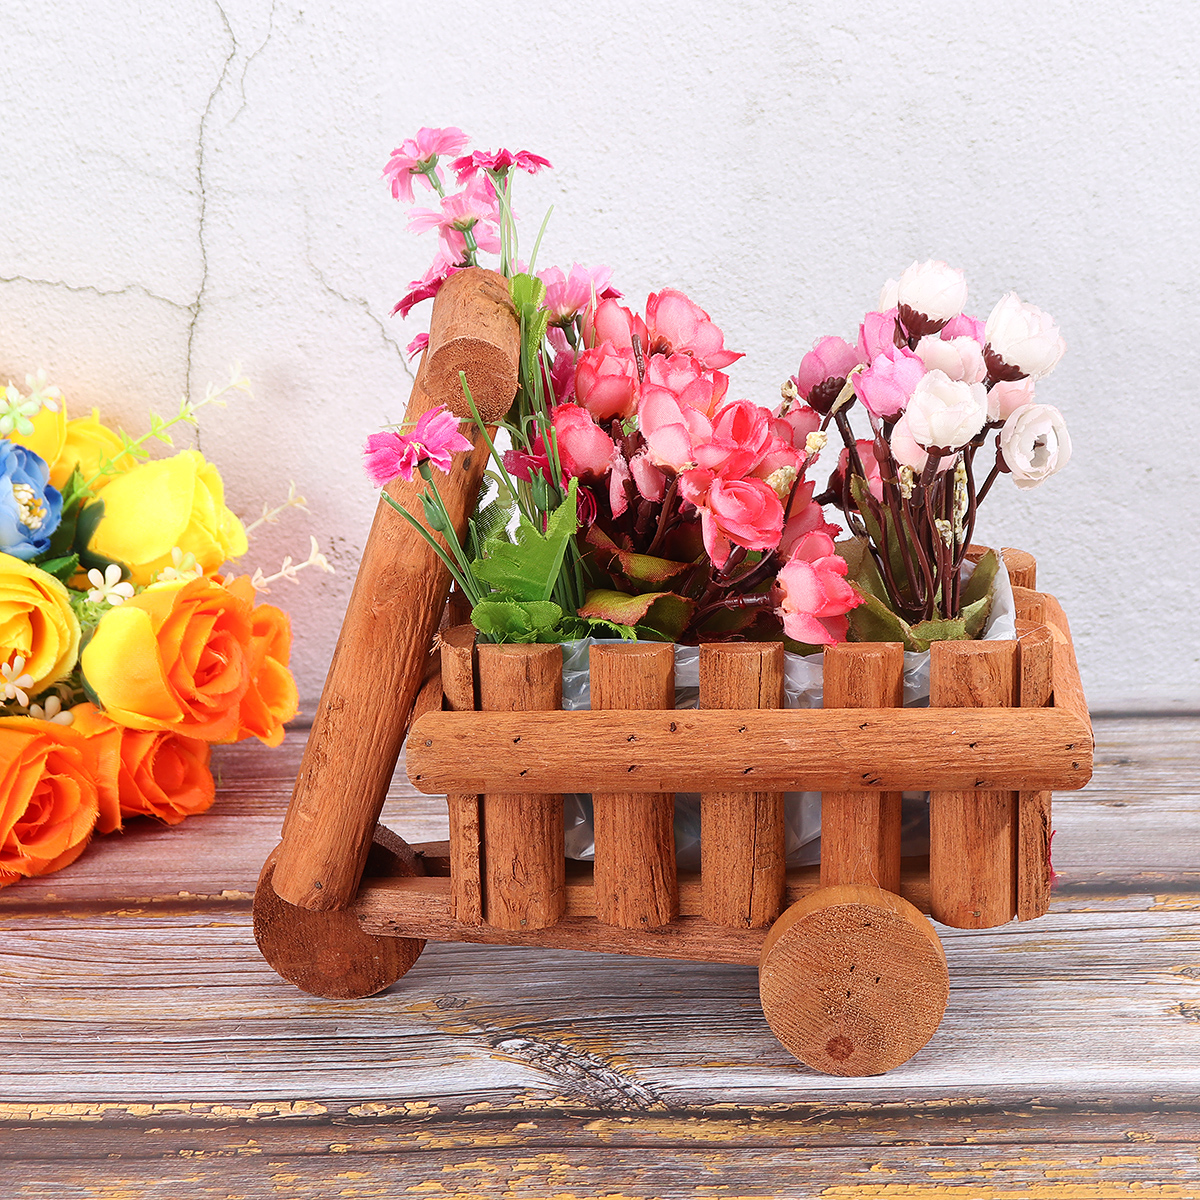 Small-Cart-Flower-Pot-Wooden-Wheelbarrow-Planter-Succulent-Container-Ornament-1727273-1